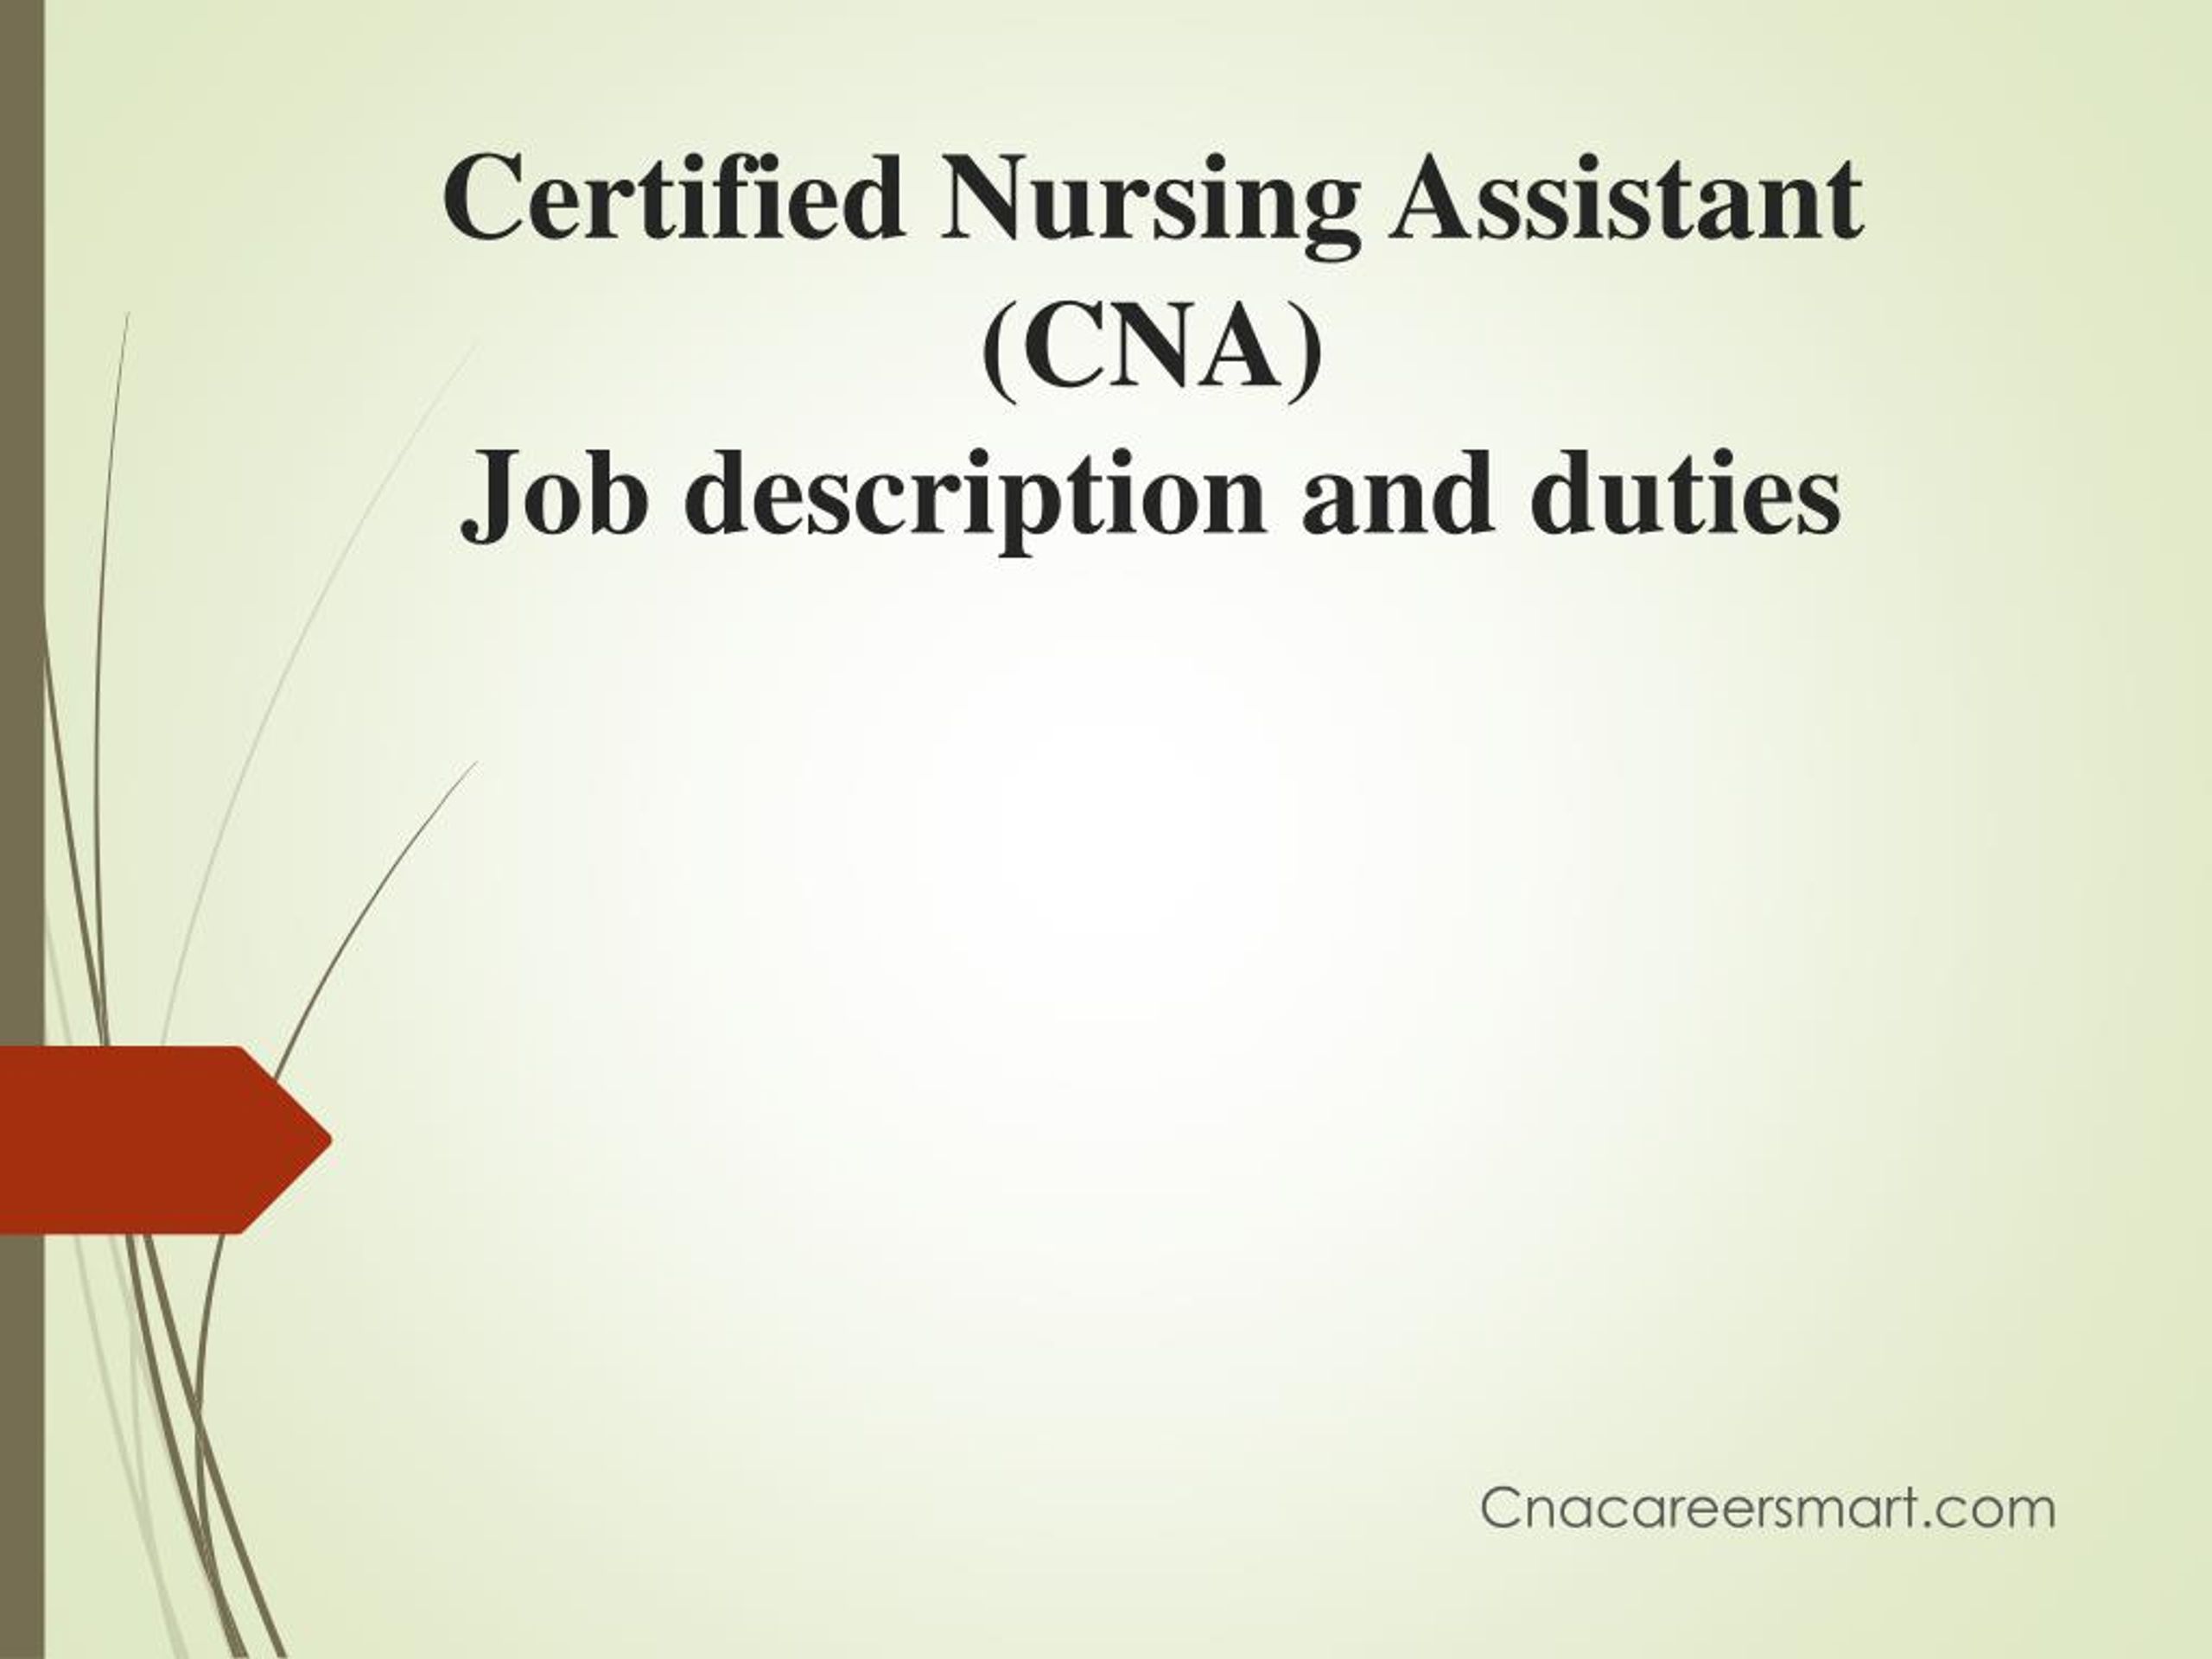 What is a certified nursing assistant job description